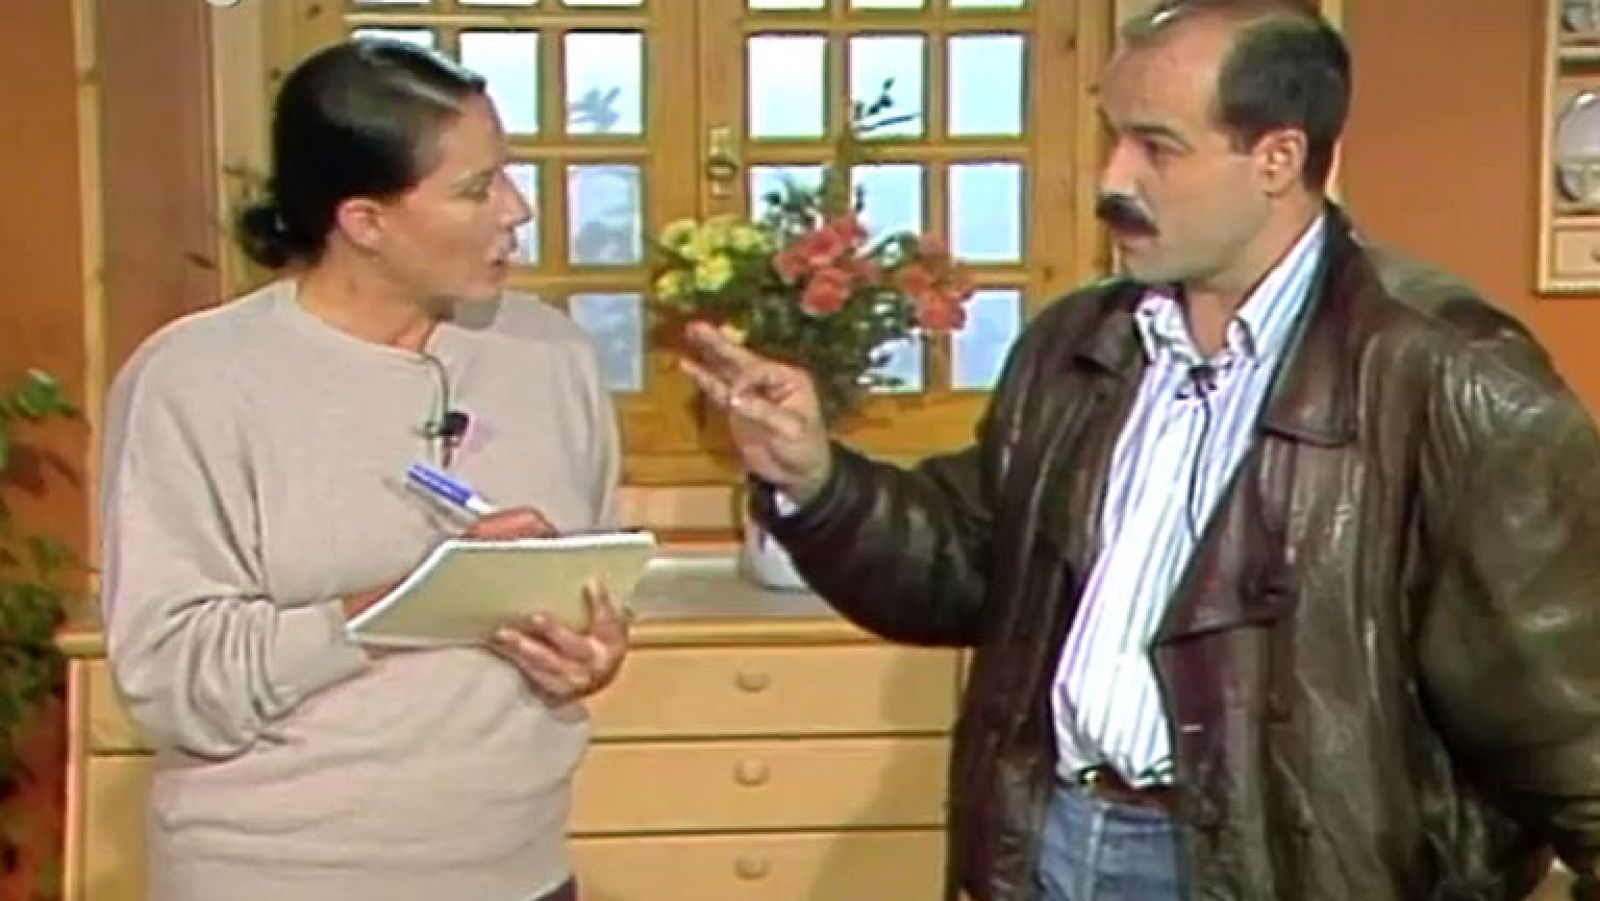 Con las manos en la masa - Espagueti con gambas con Antonio Resines (1988)